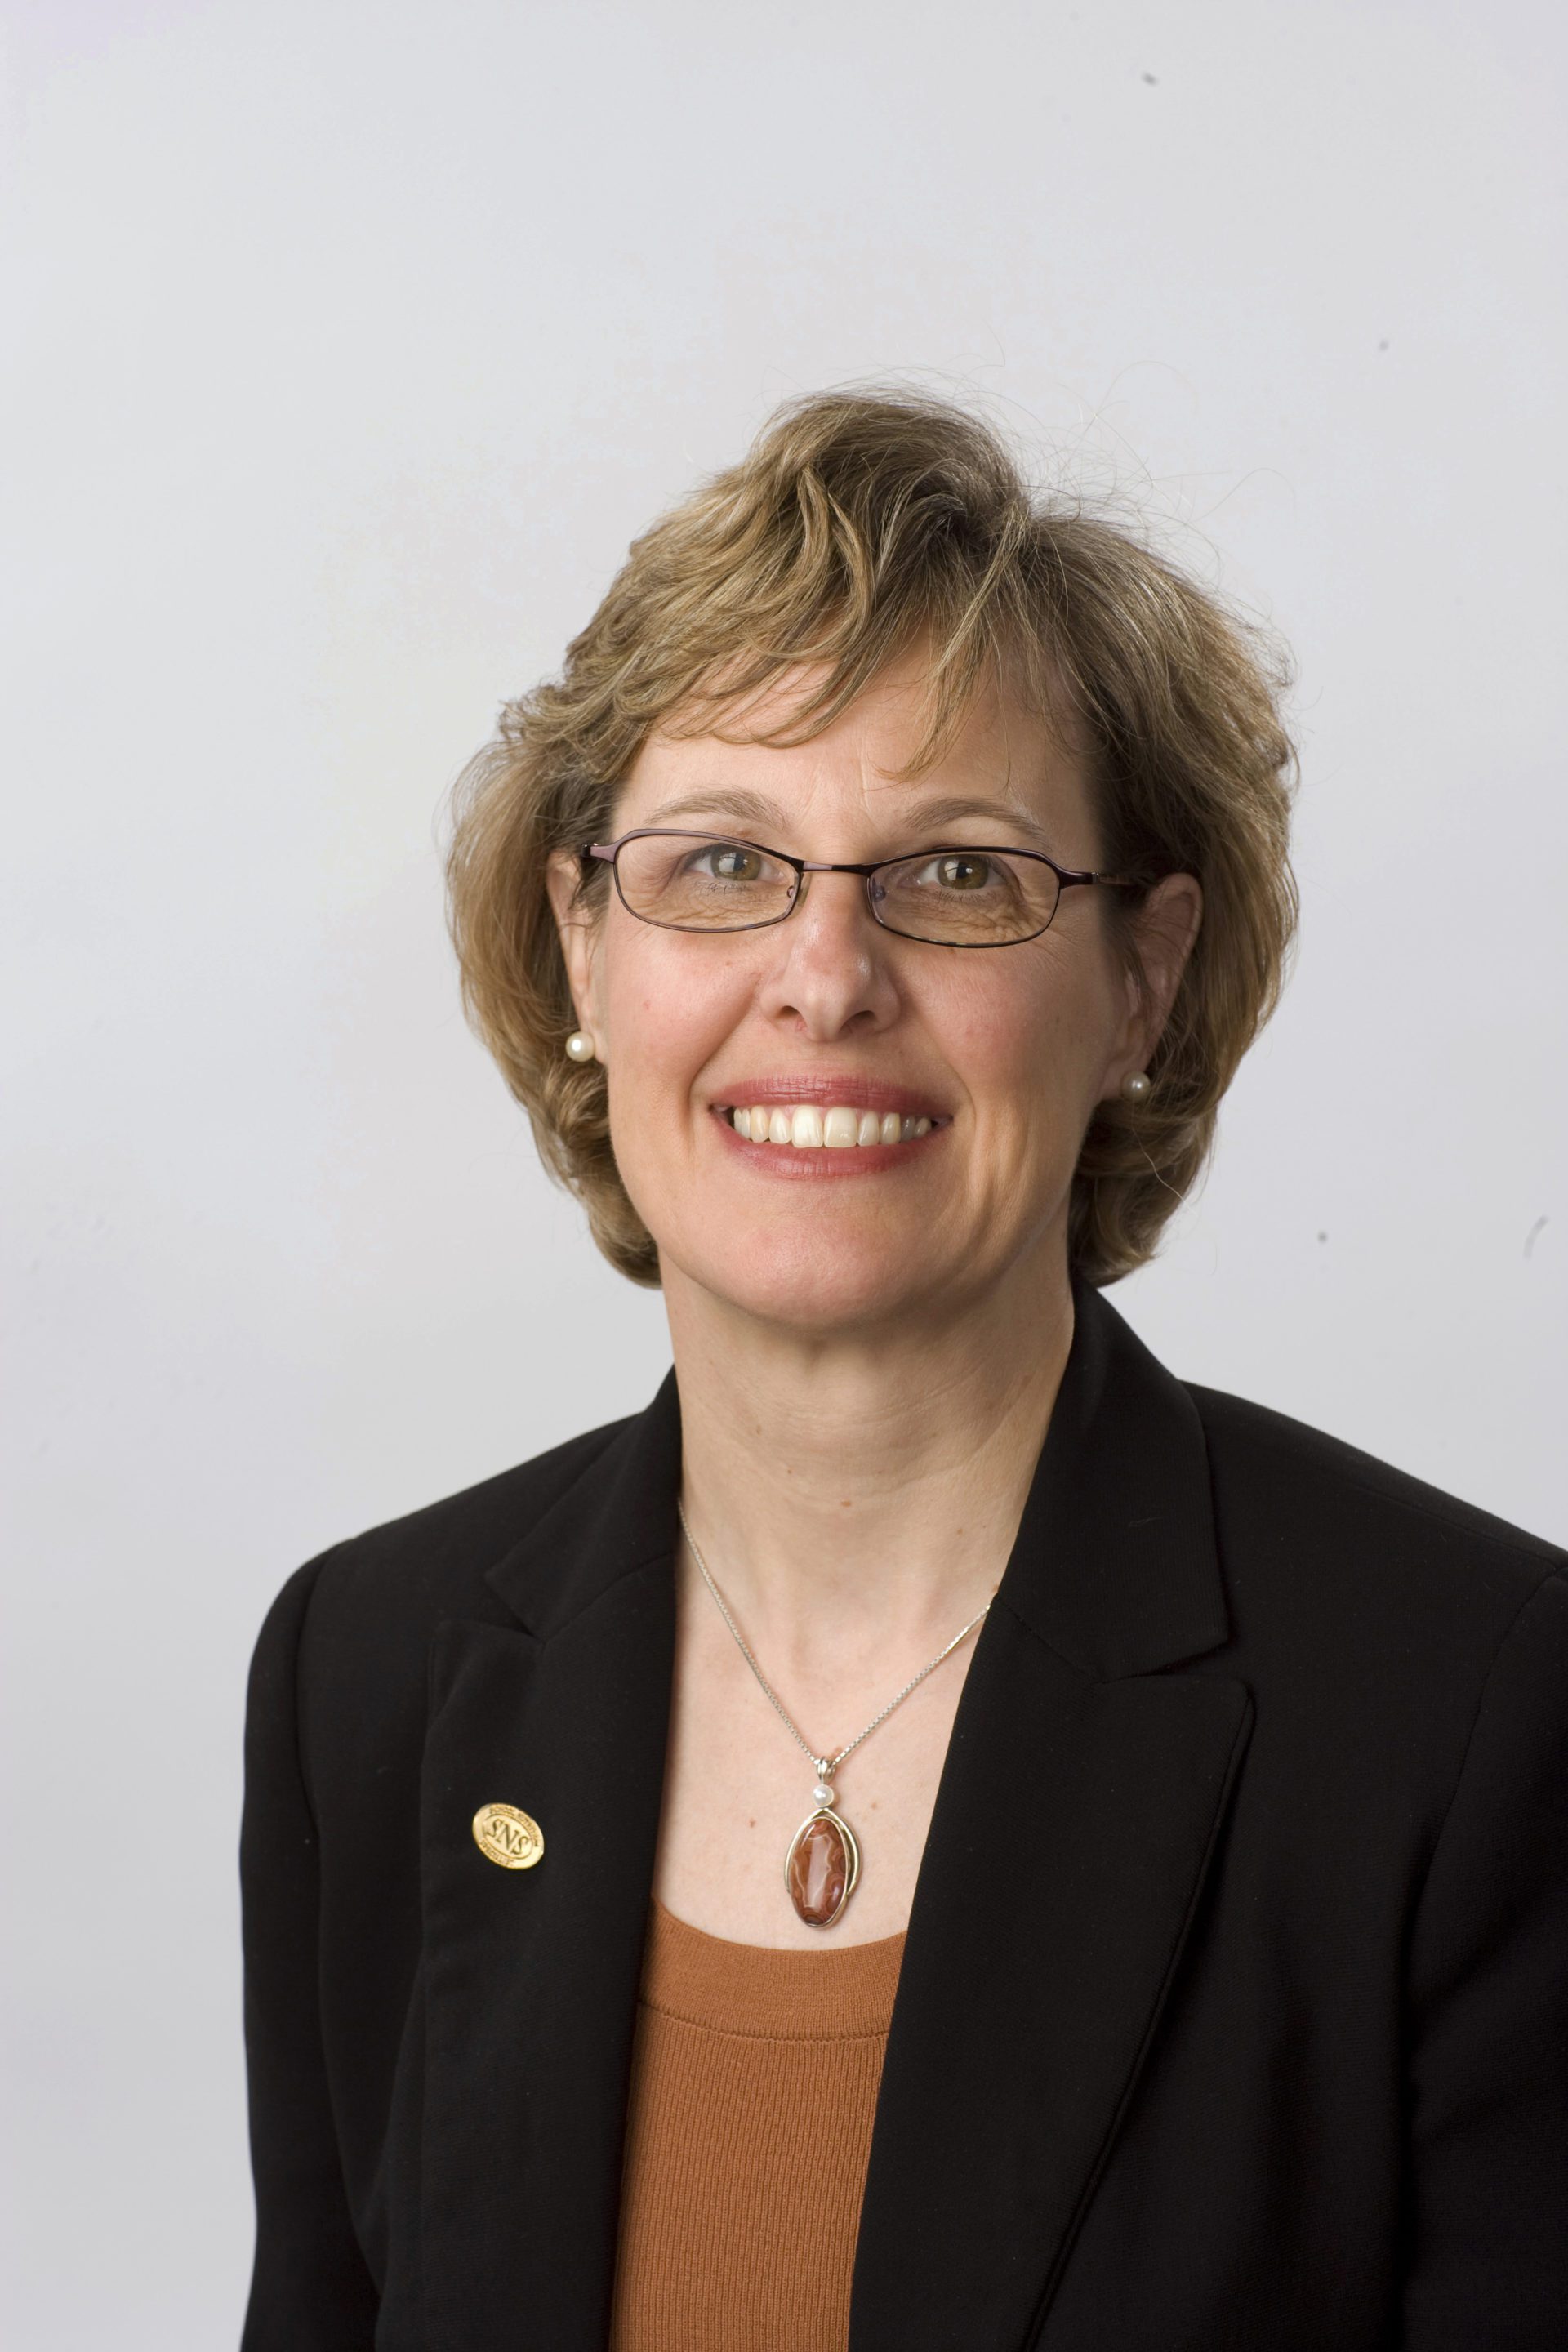 Dr. Katie Wilson, Executive Director